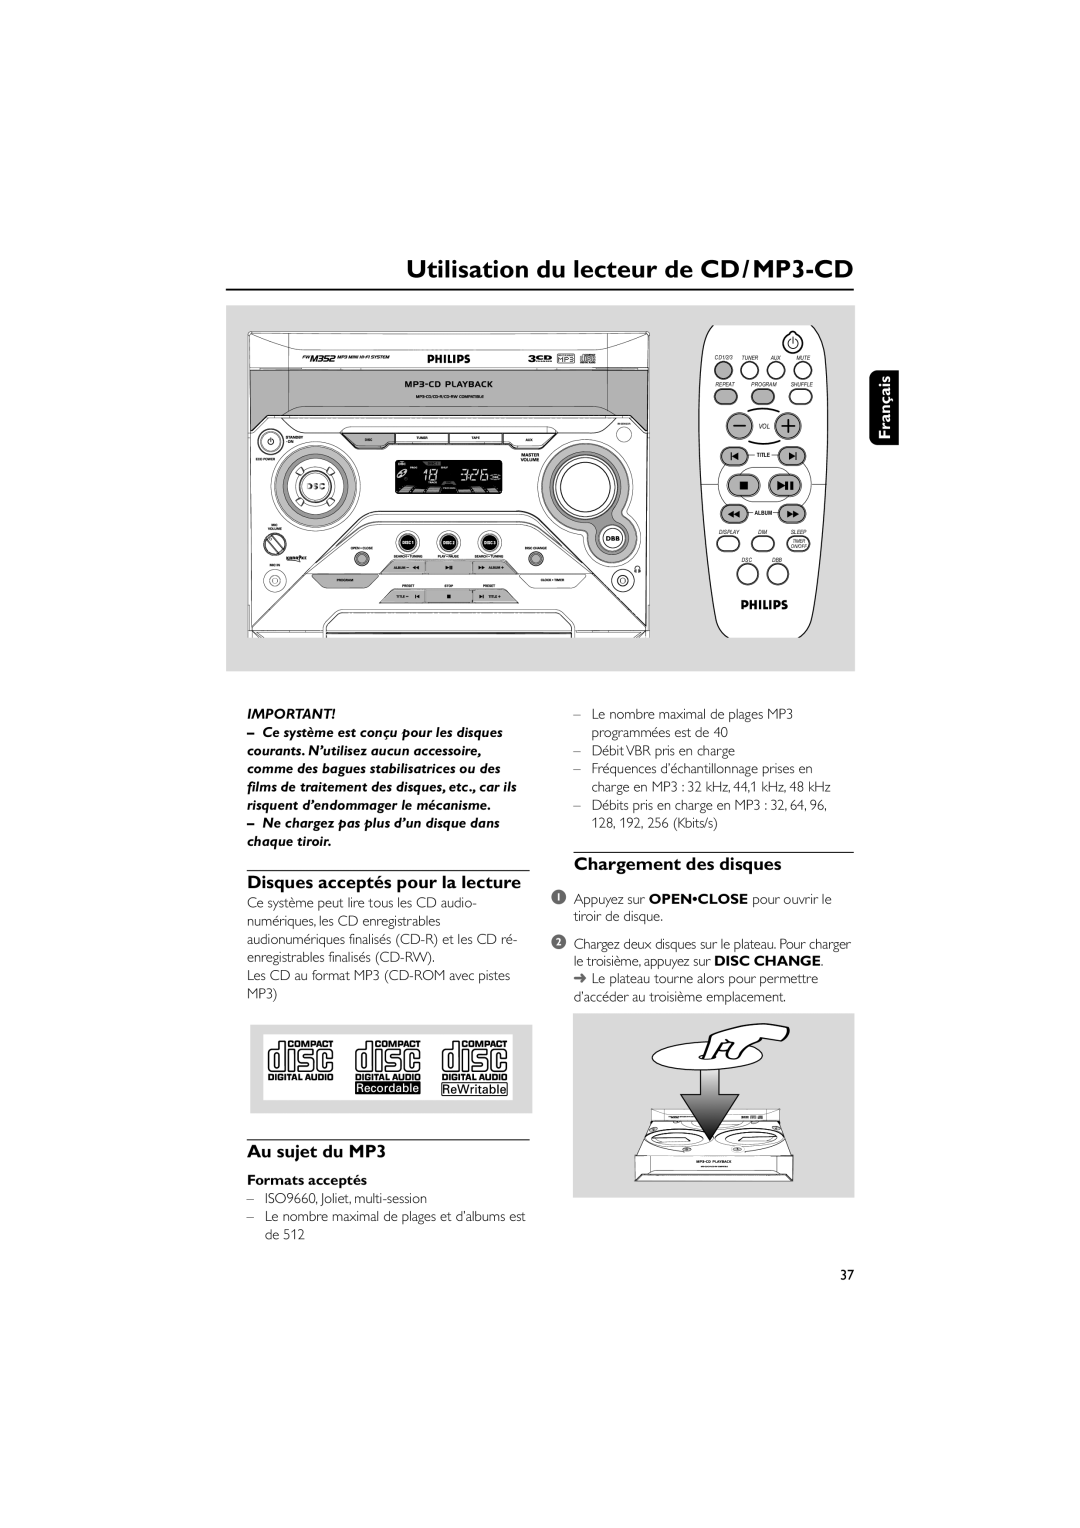 Philips FWM352 Utilisation du lecteur de CD/MP3-CD, Disques acceptés pour la lecture, Chargement des disques, Français 